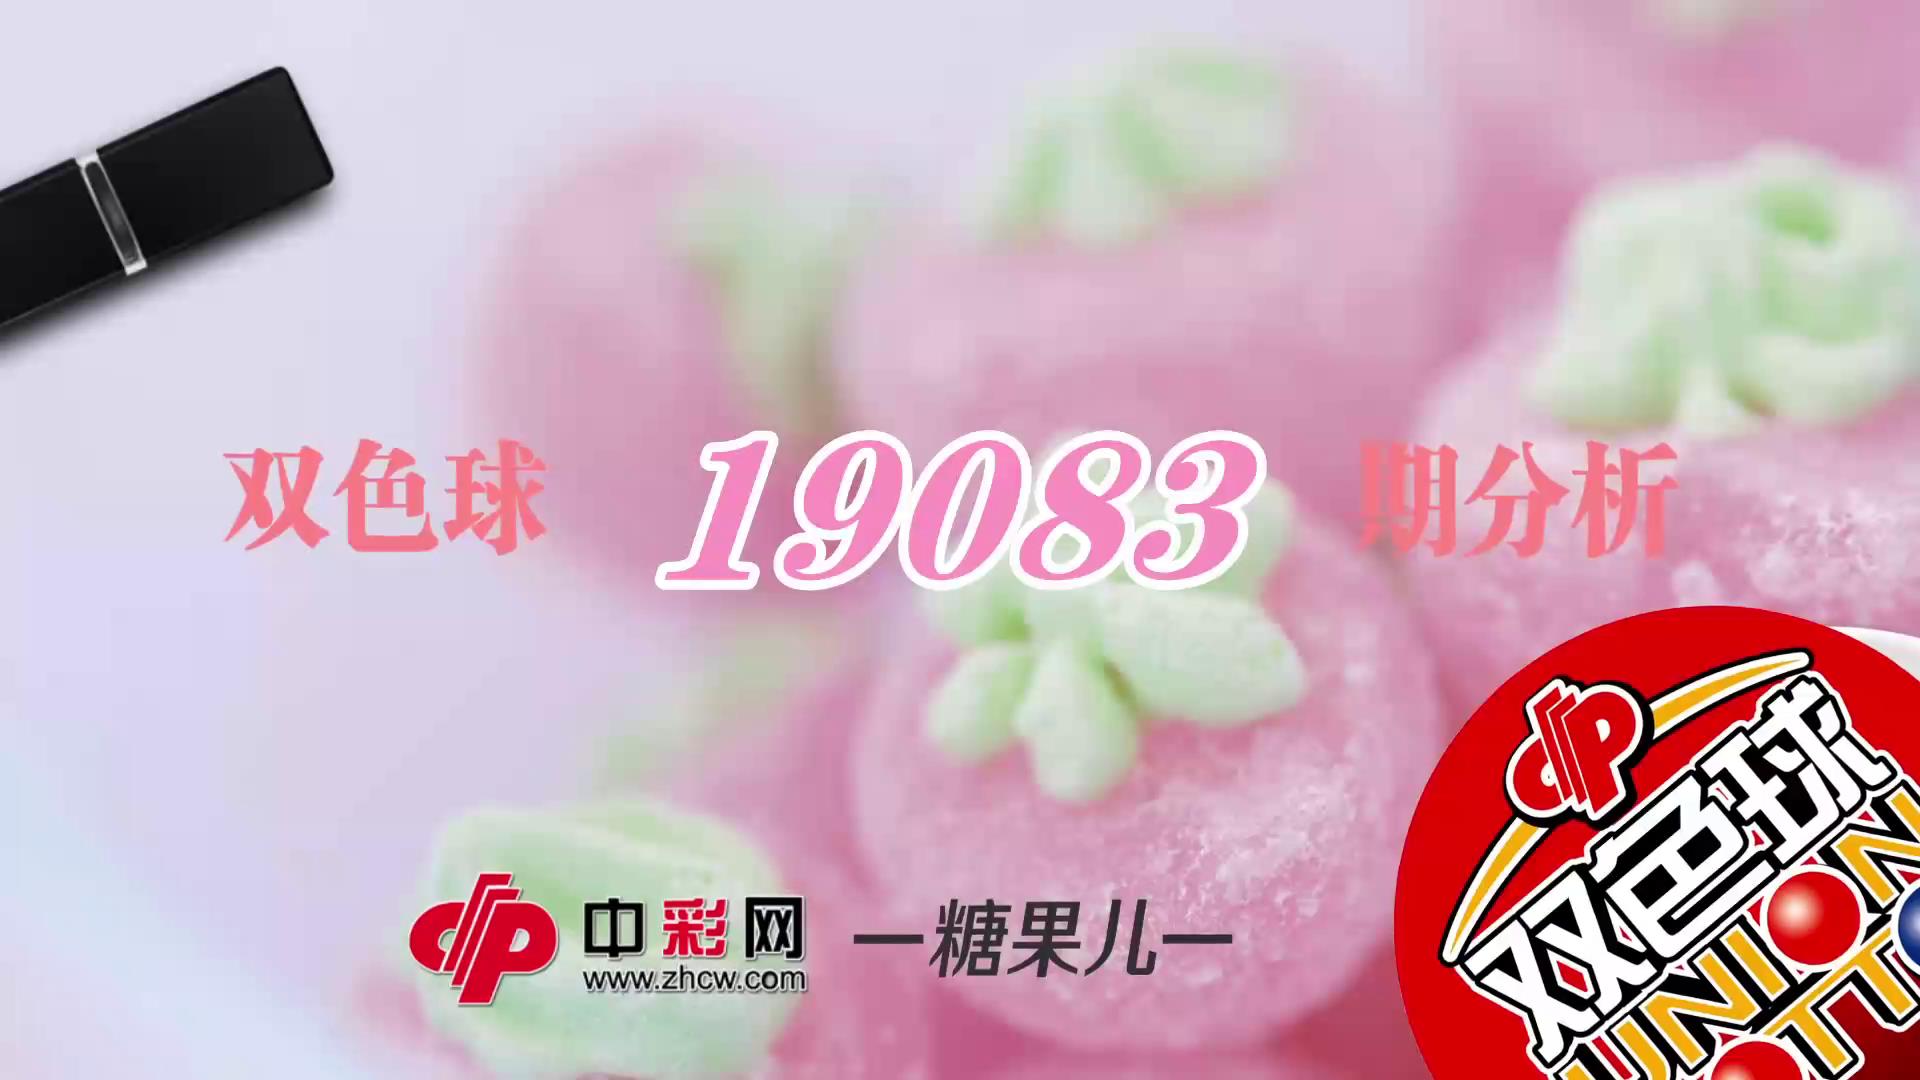 【中彩视频】糖果儿双色球第19083期